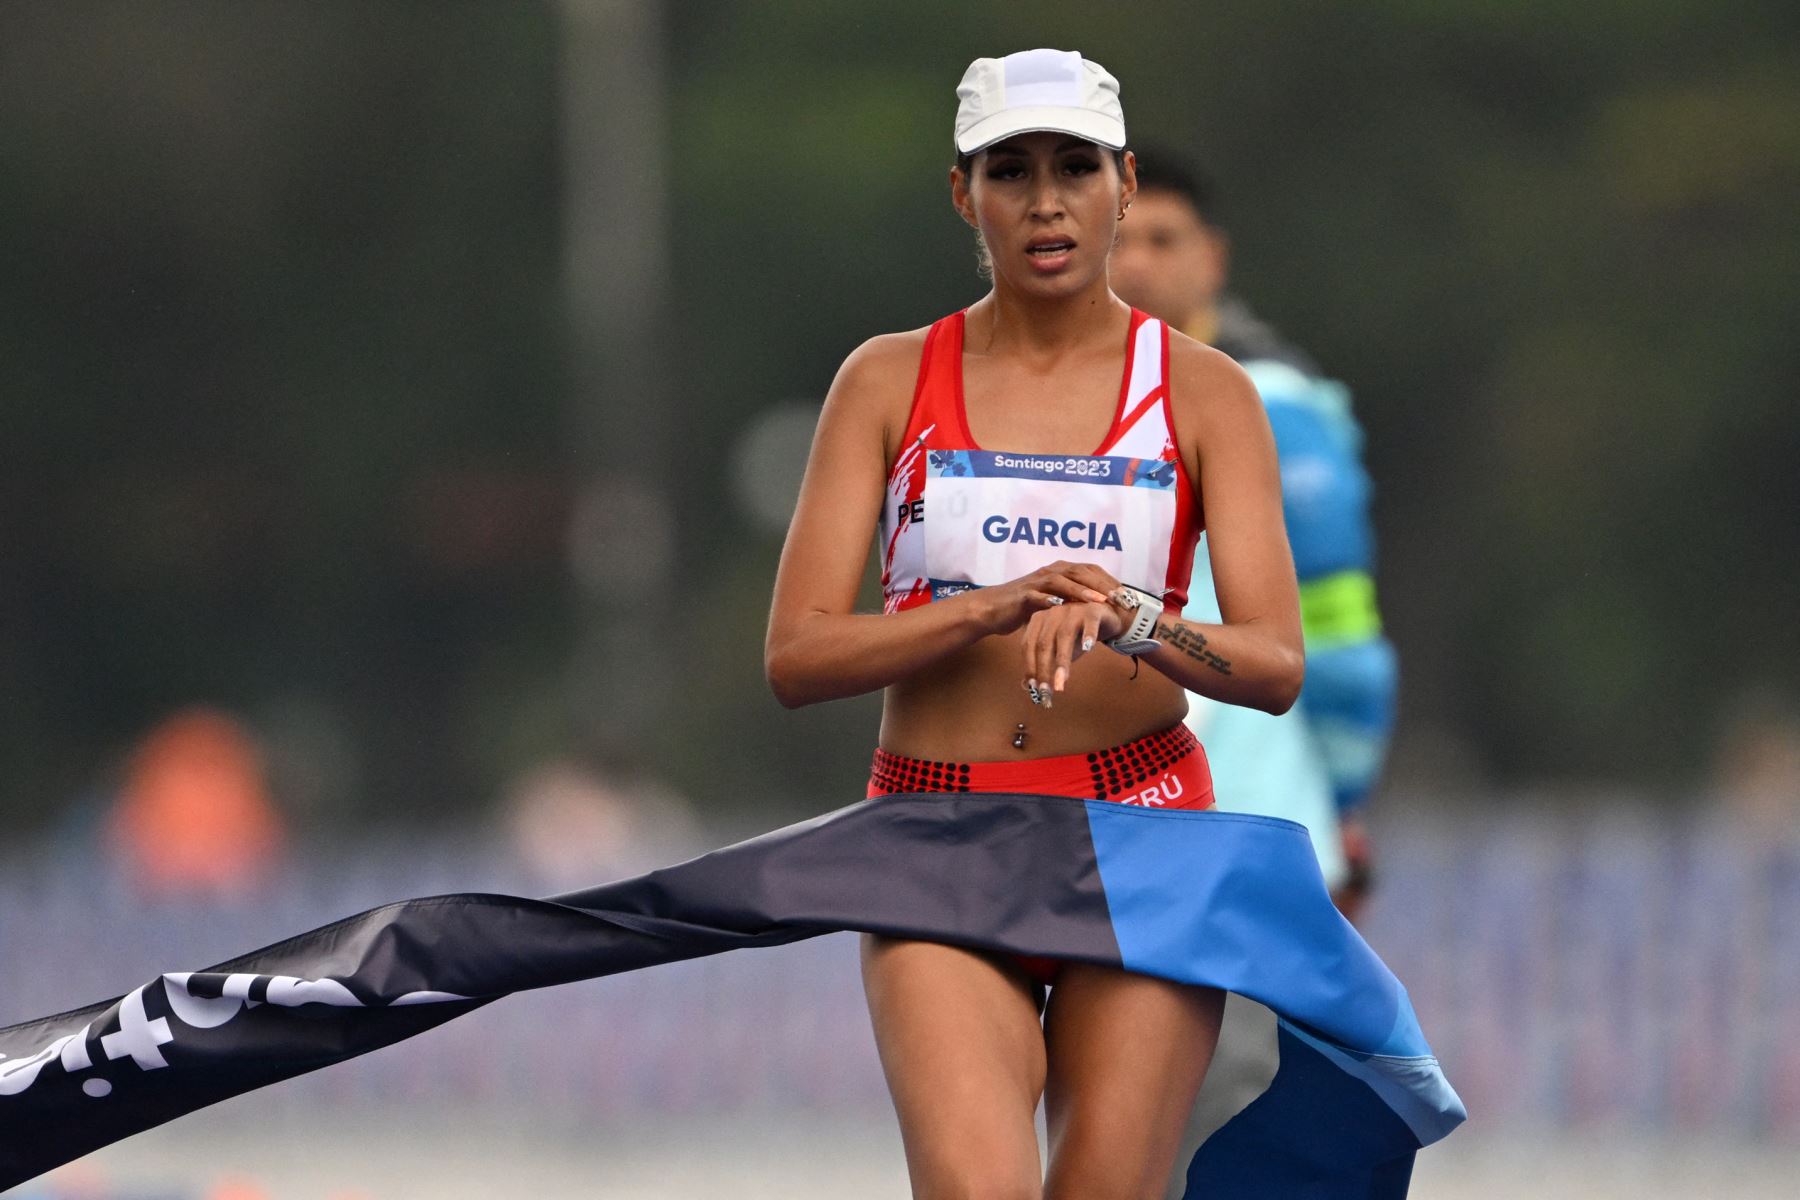 ¿Kimberly García perderá la medalla de oro debido a una medición incorrecta del recorrido?